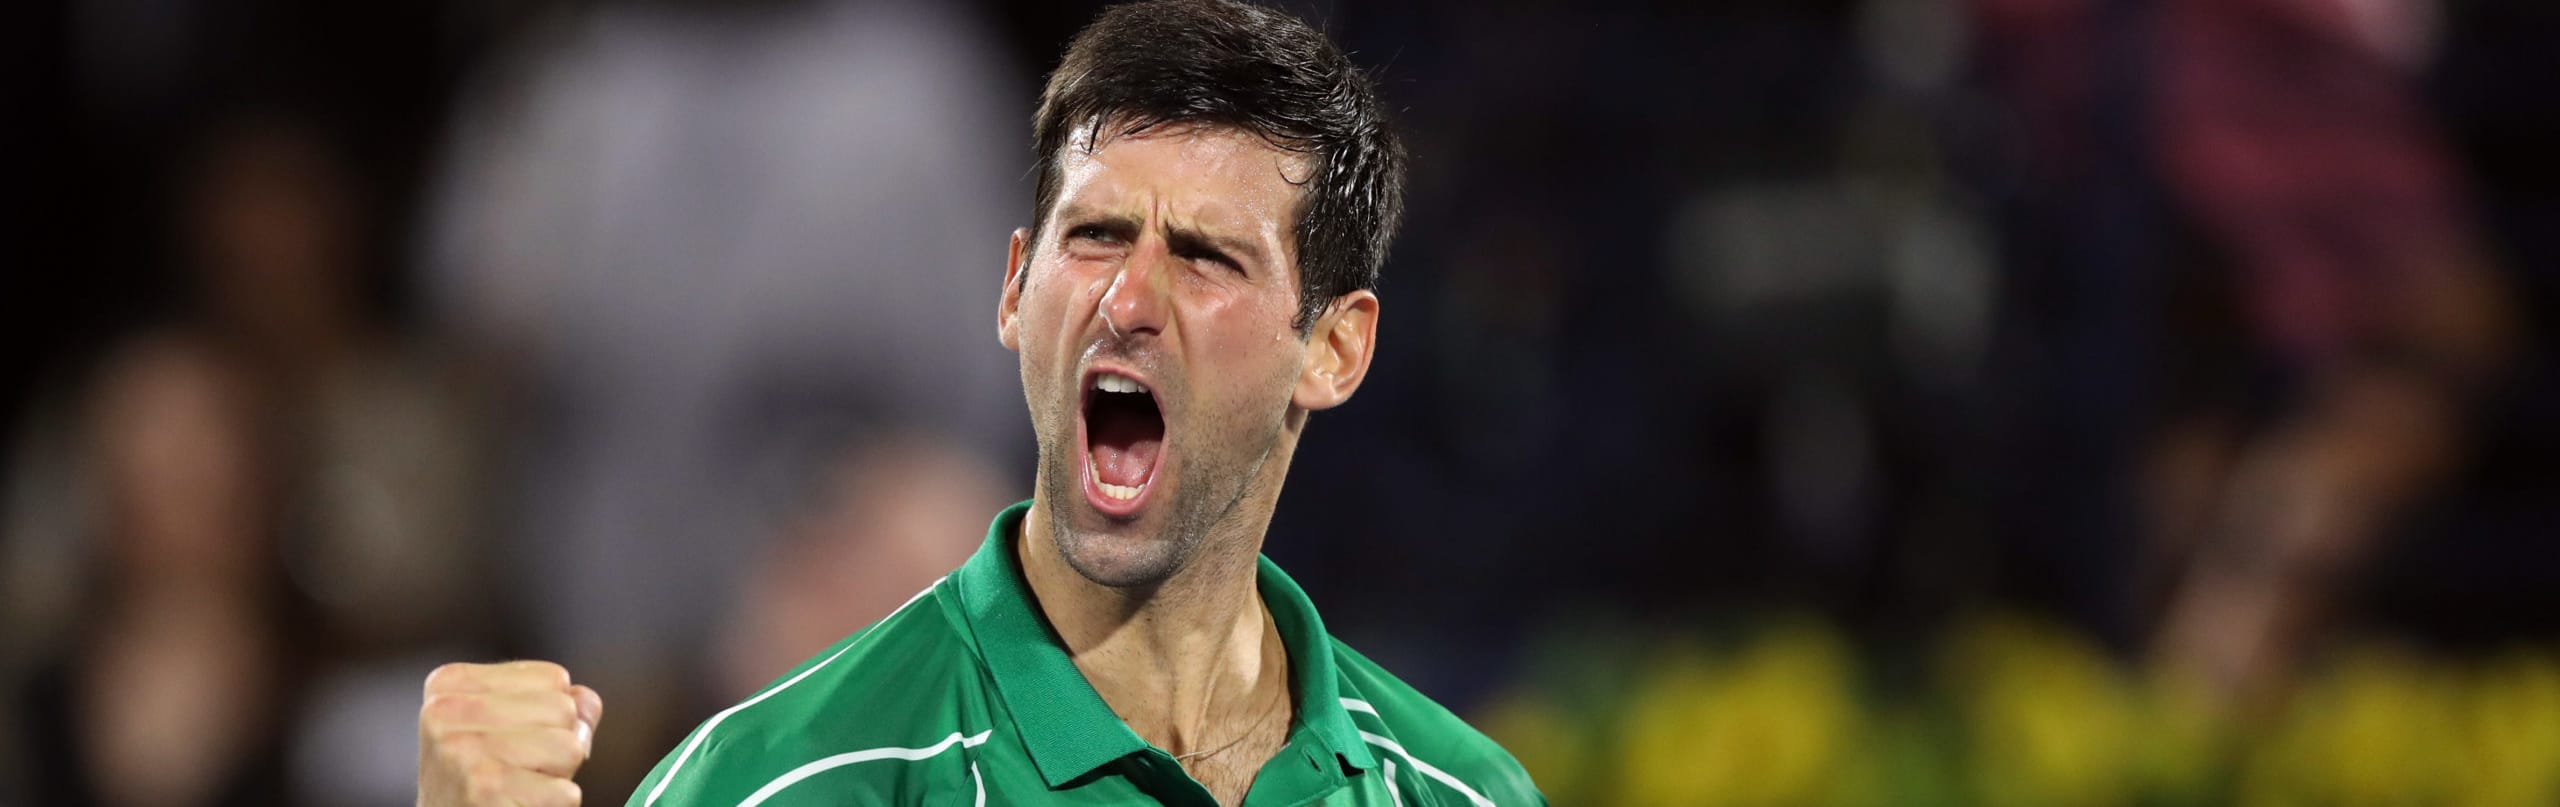 Da Djokovic a Sinner, al caos nel torneo femminile: storia, favoriti e quote dell'Australian Open